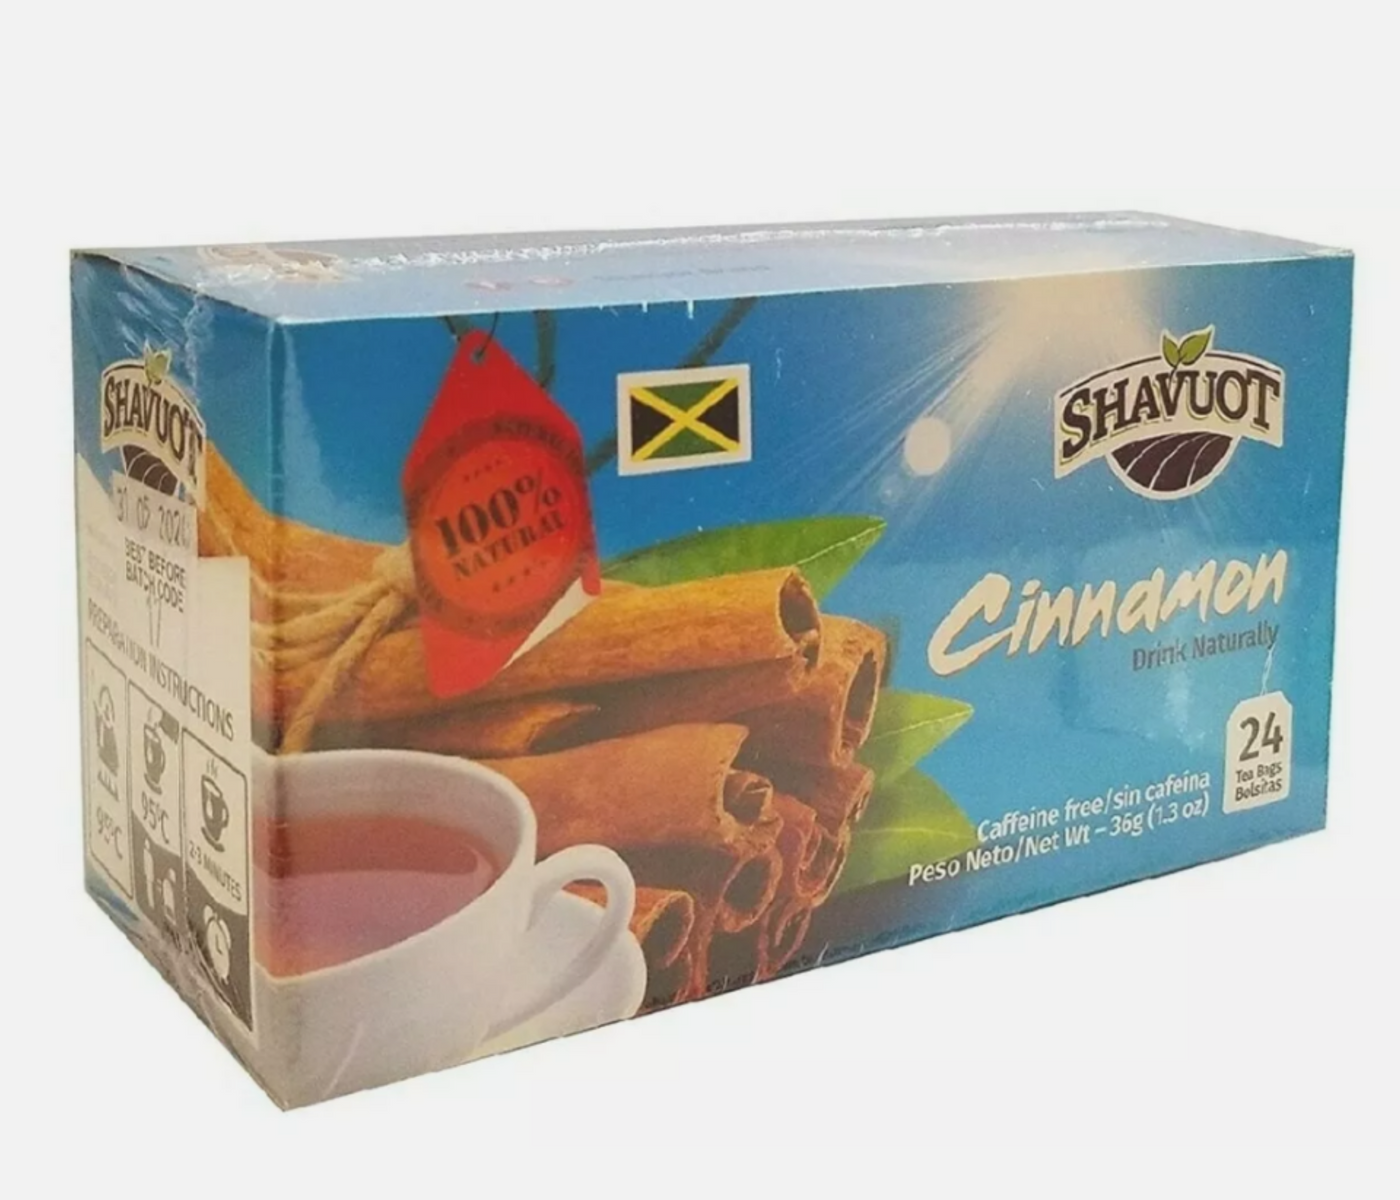 Shavuot Cinnamon Tea Natural Drink 24 Bags